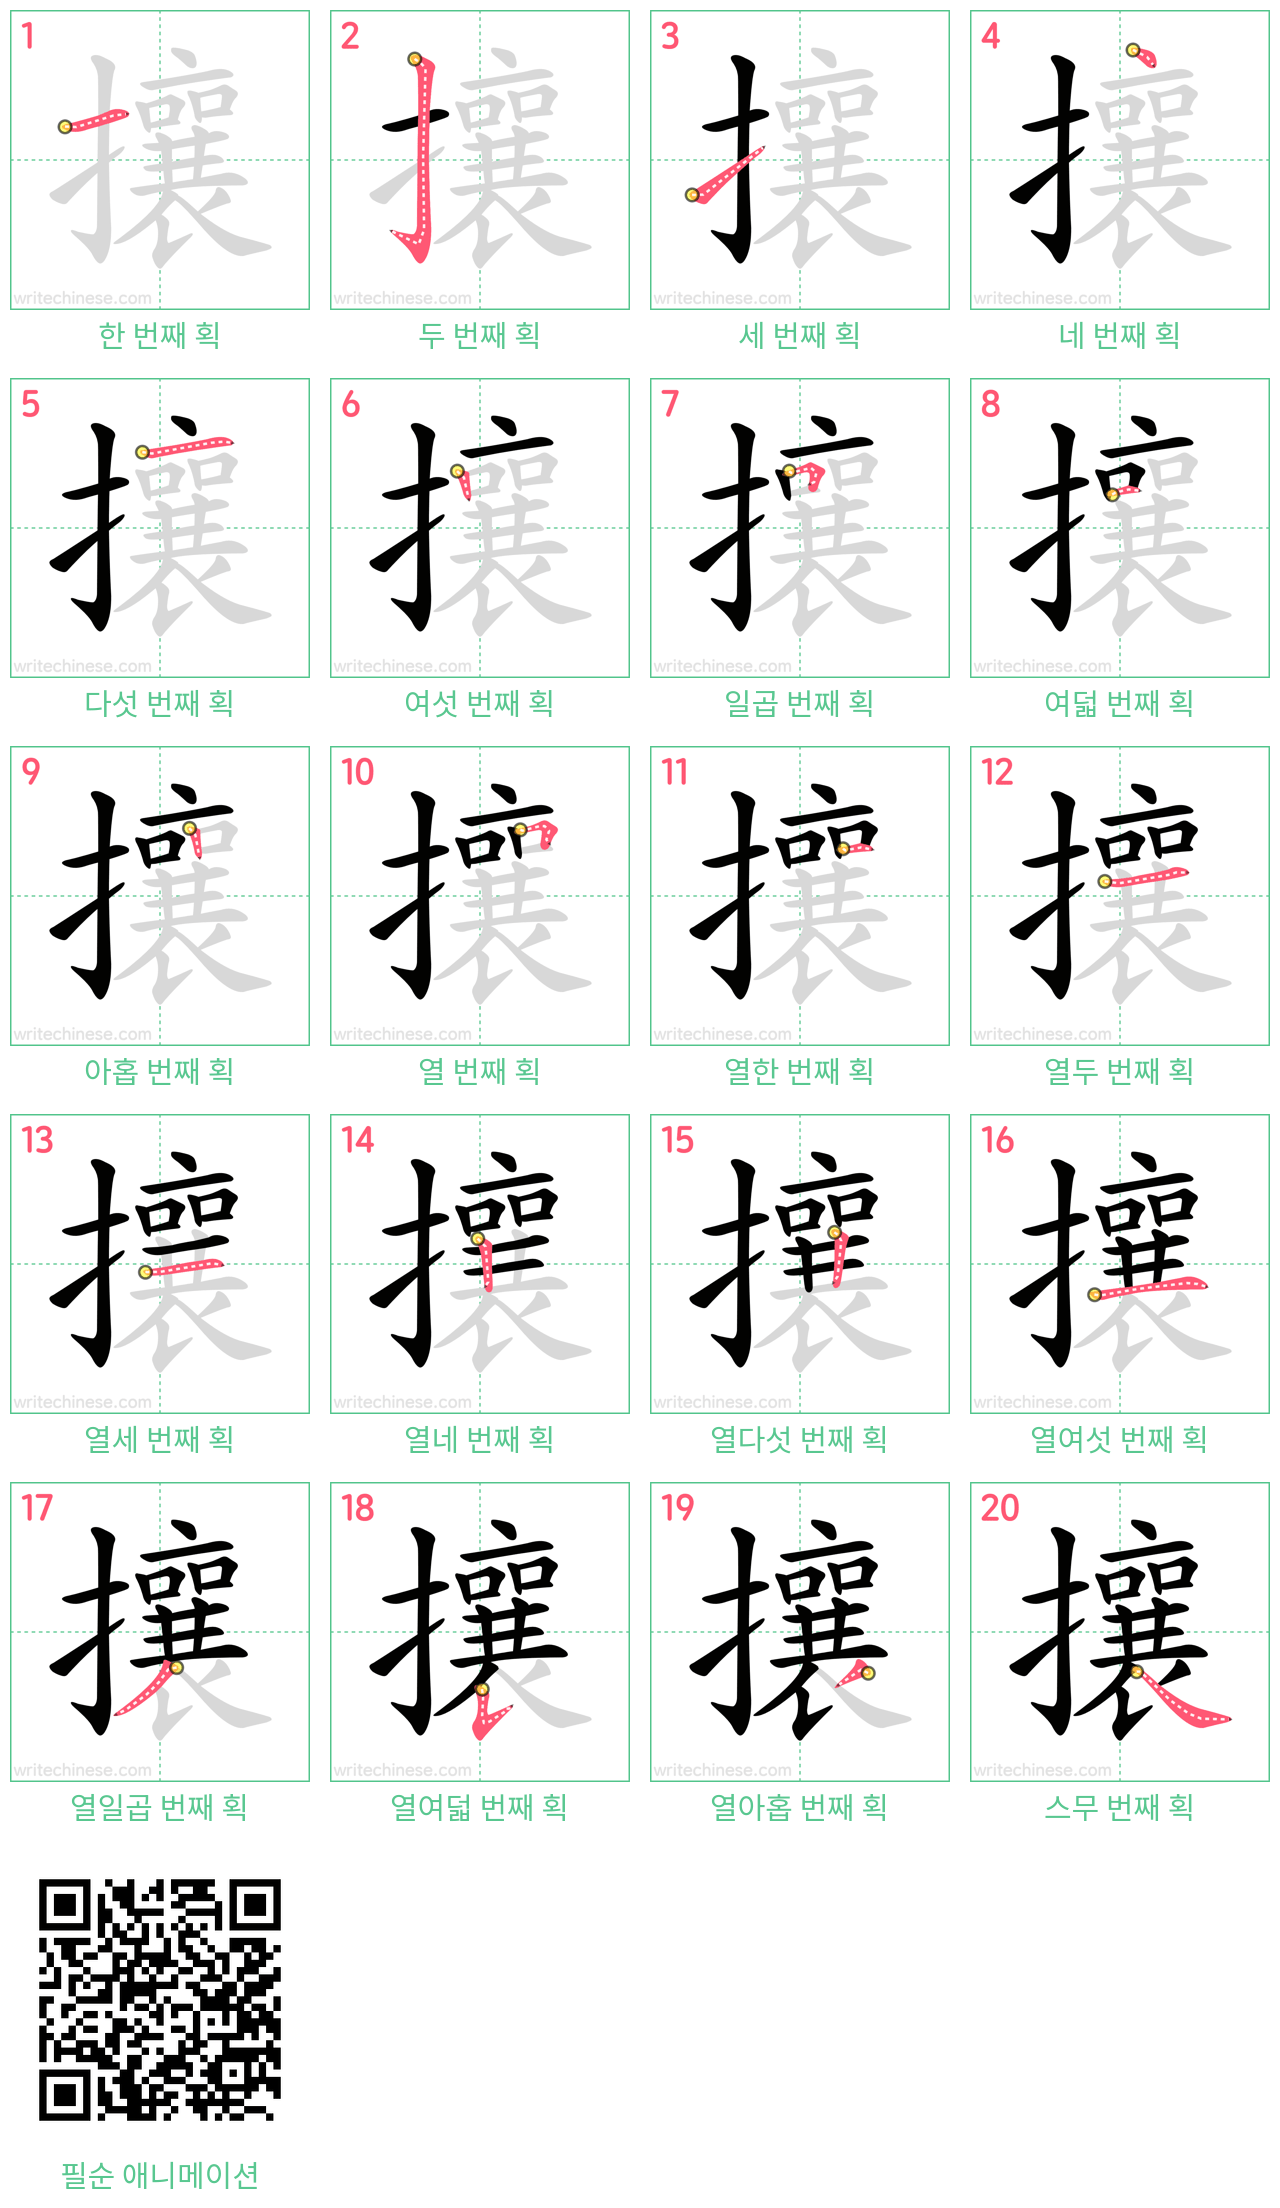 攘 step-by-step stroke order diagrams